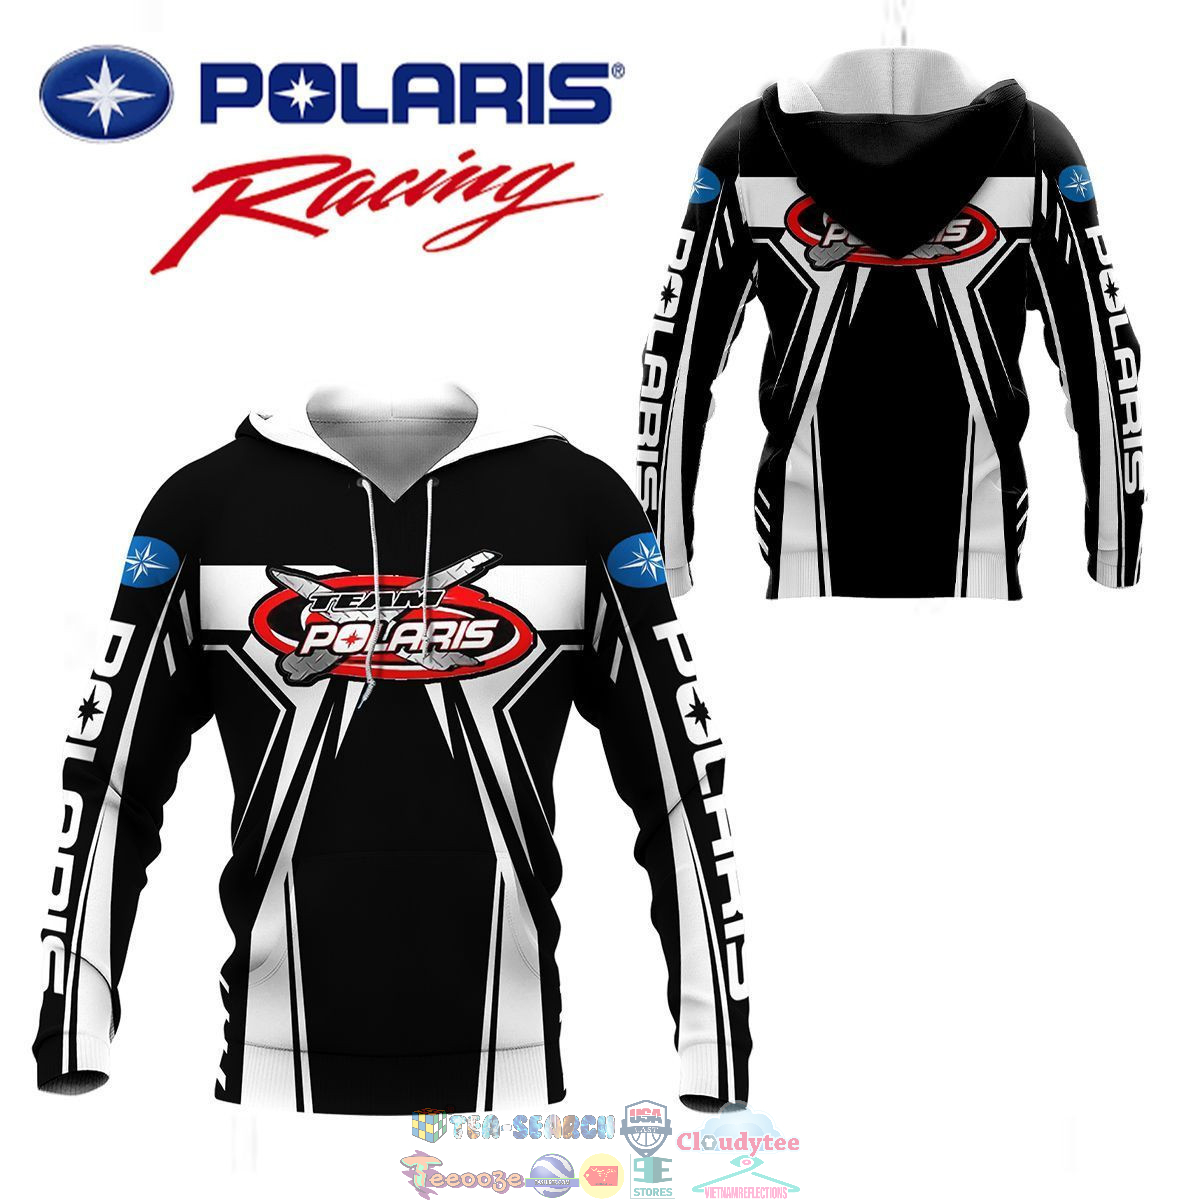 Polaris Racing Team ver 3 3D hoodie and t-shirt